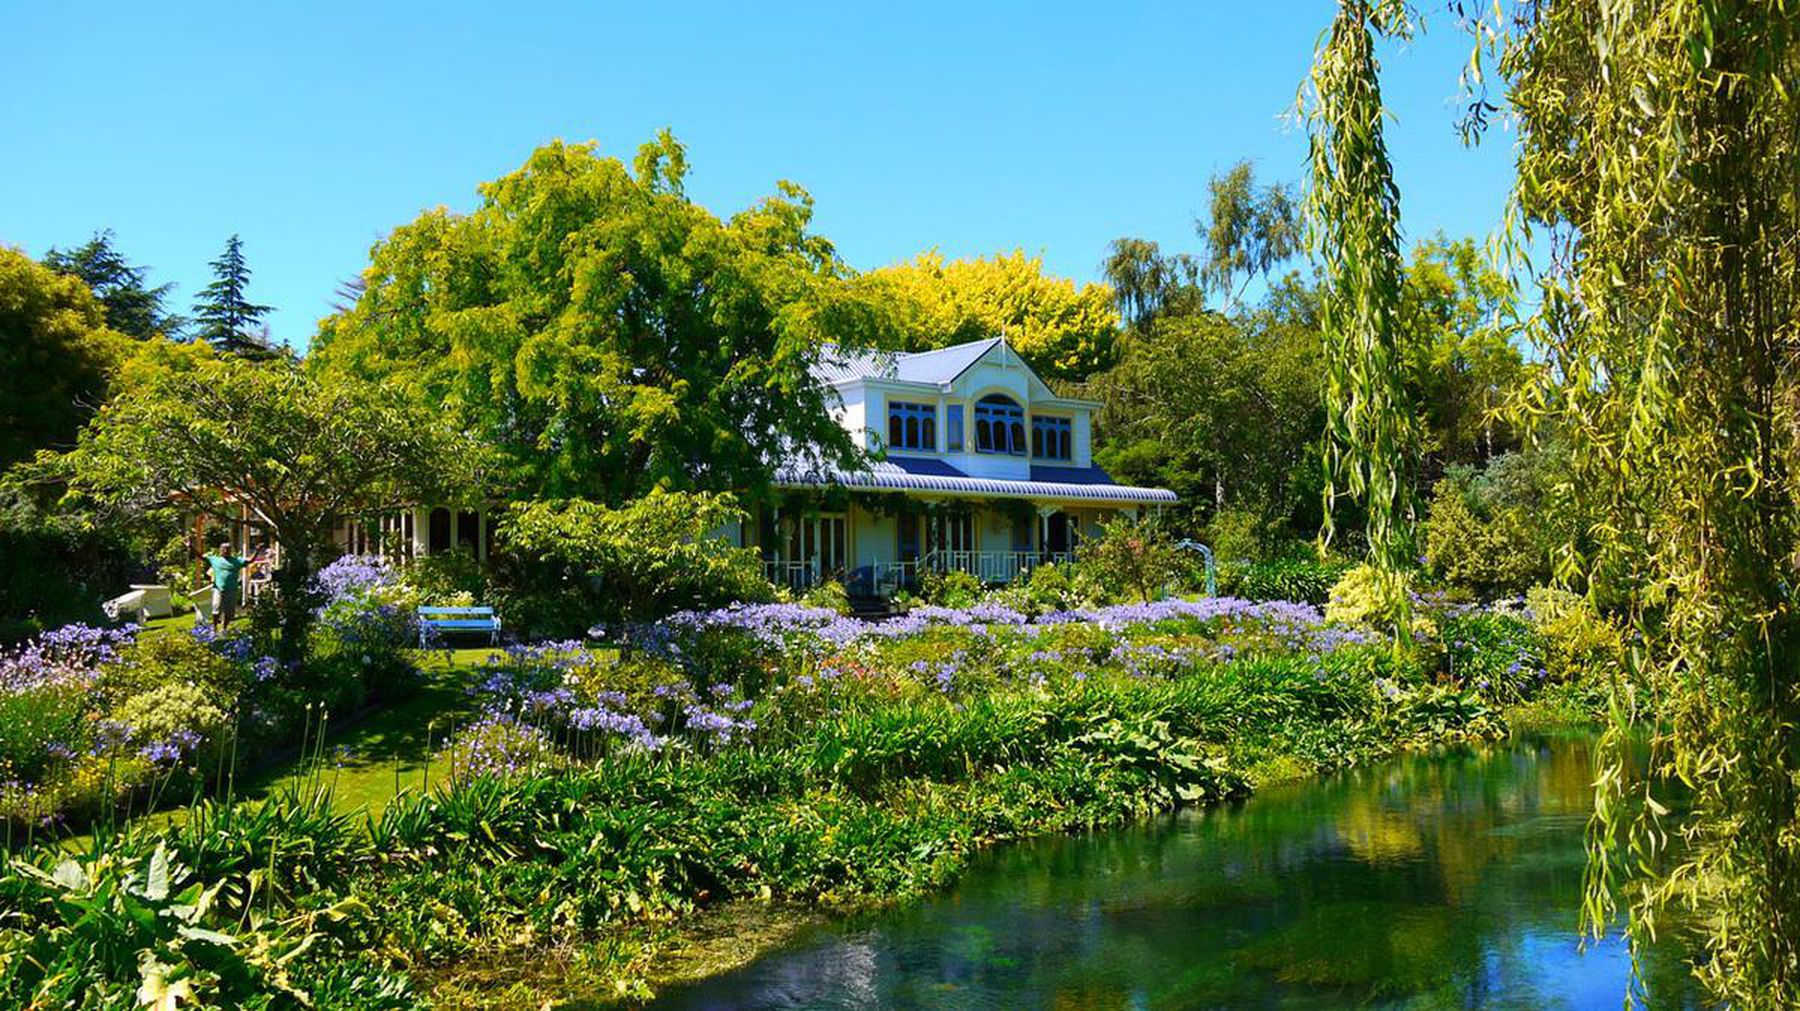 Hortensia House, Marlborough, New Zealand @MarlboroughNZ